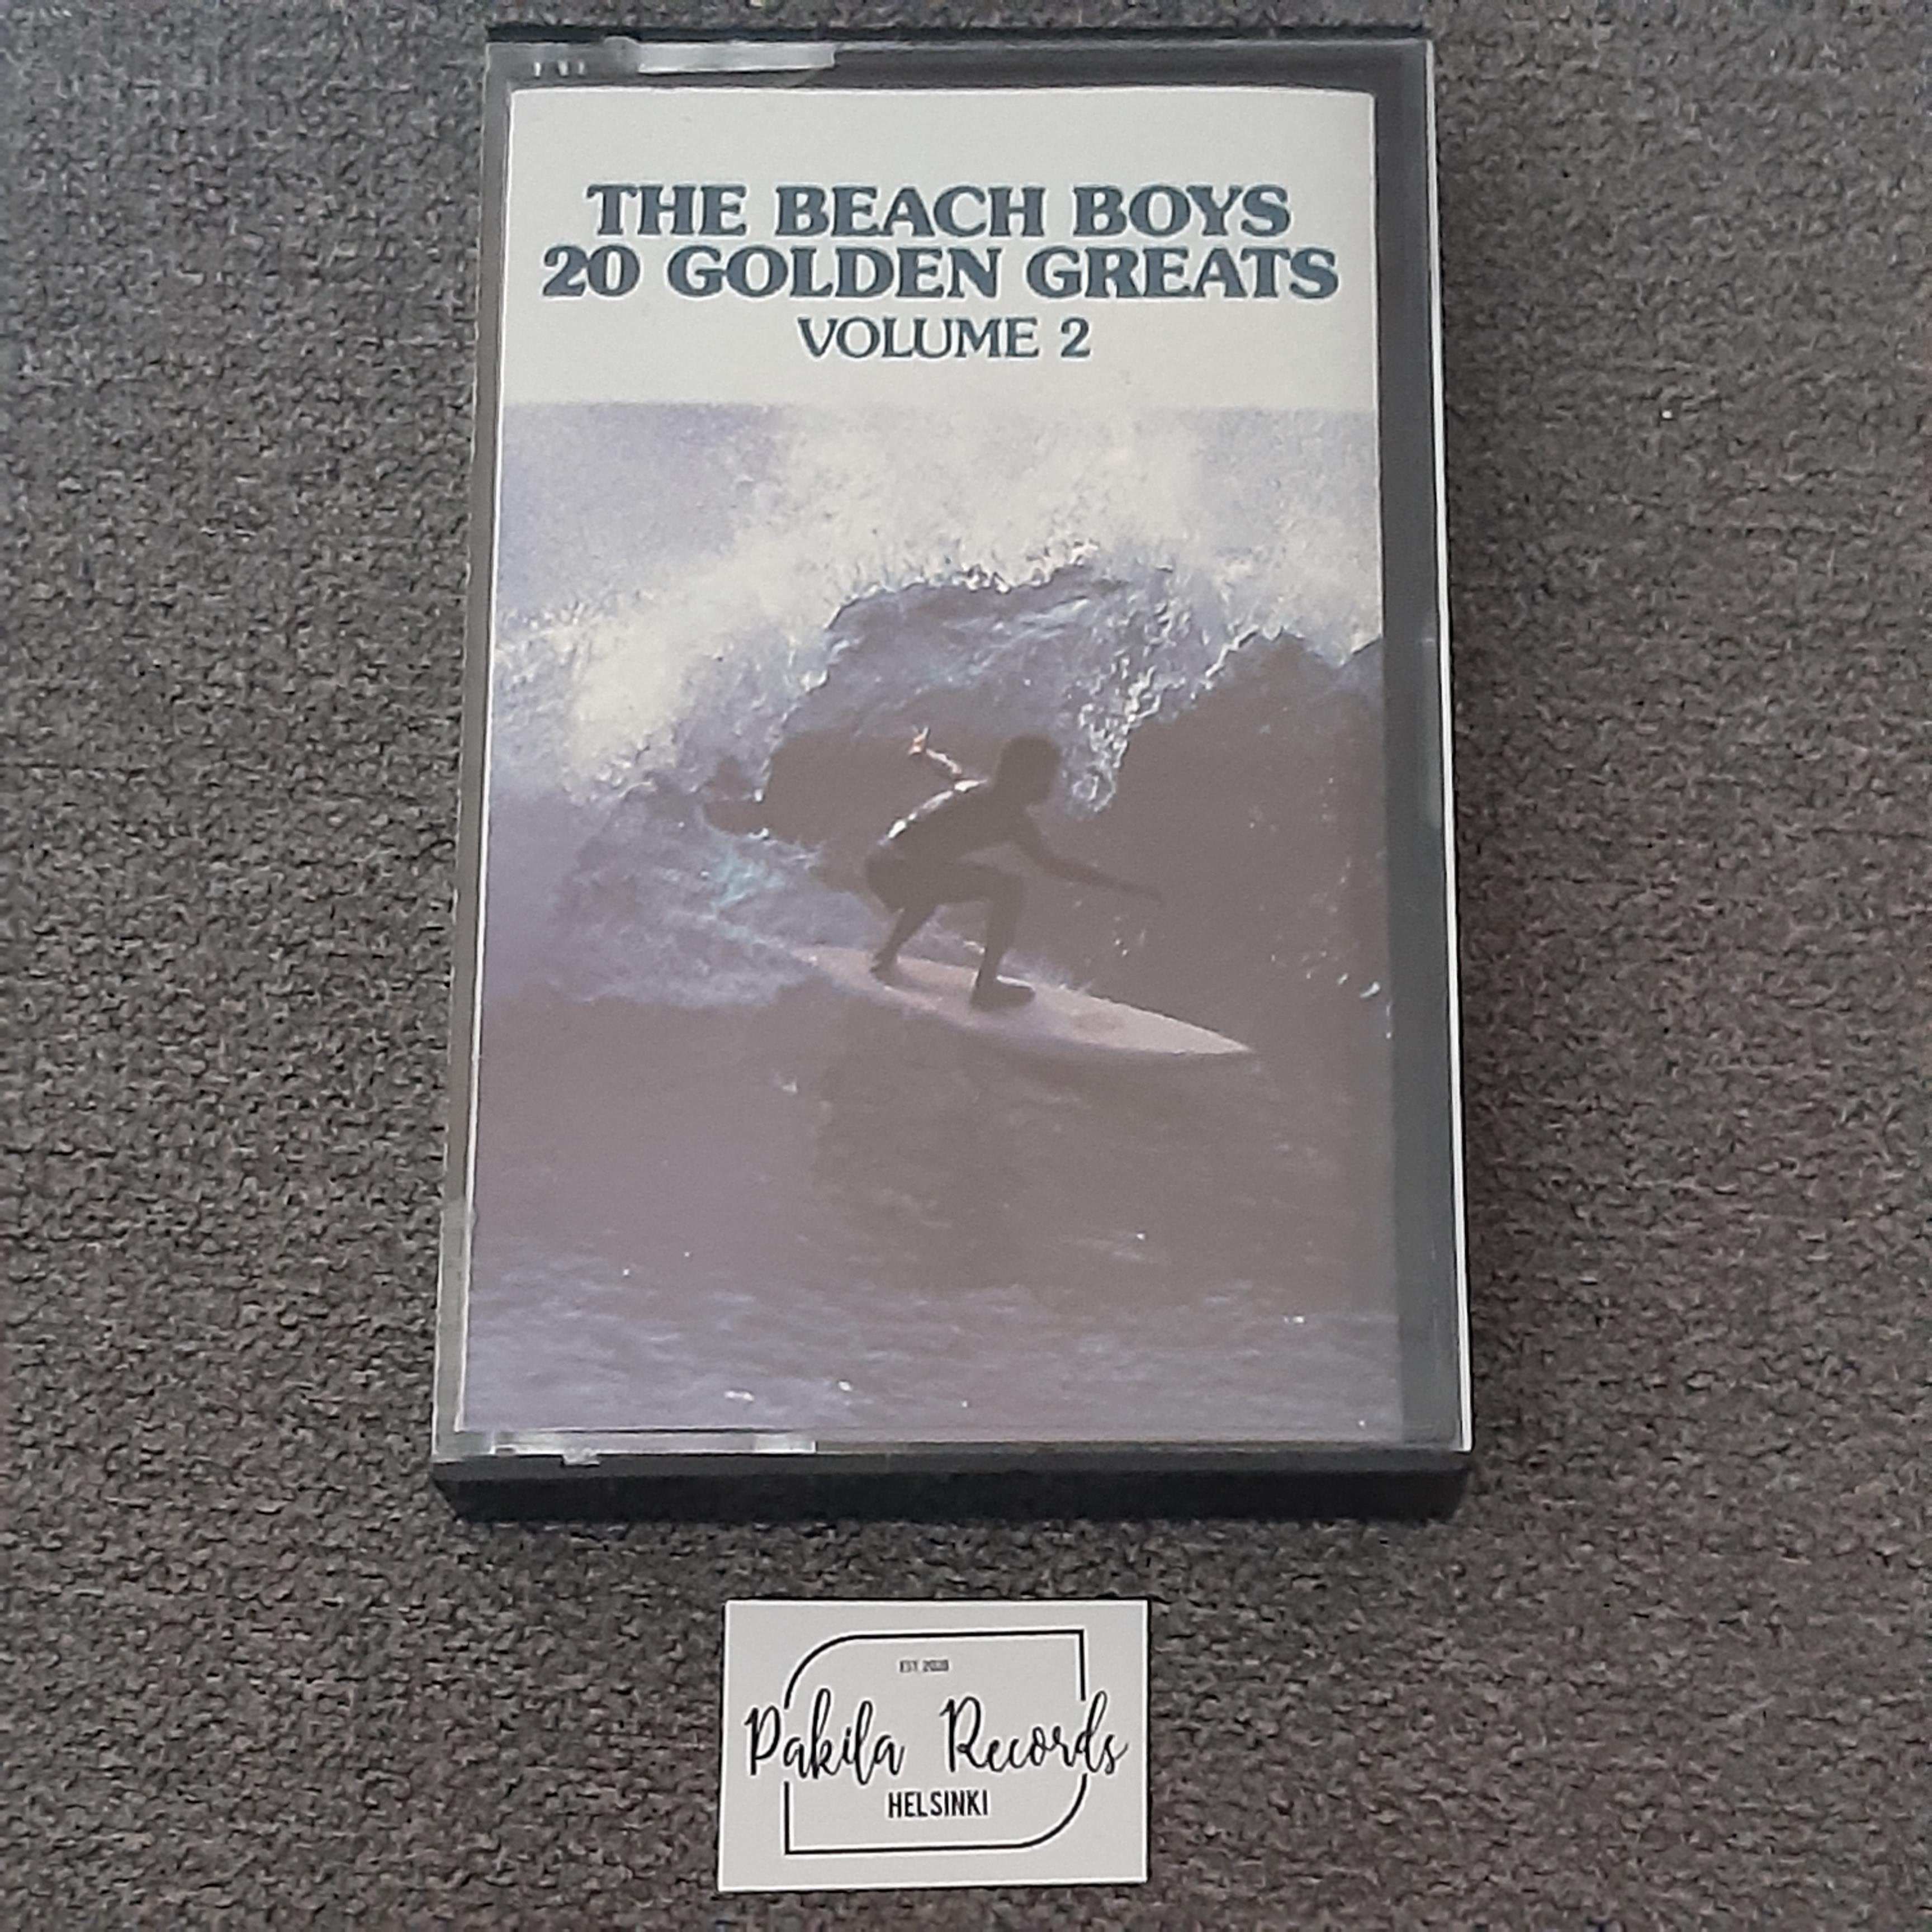 The Beach Boys - 20 Golden Greats, Volume 2 - Kasetti (käytetty)